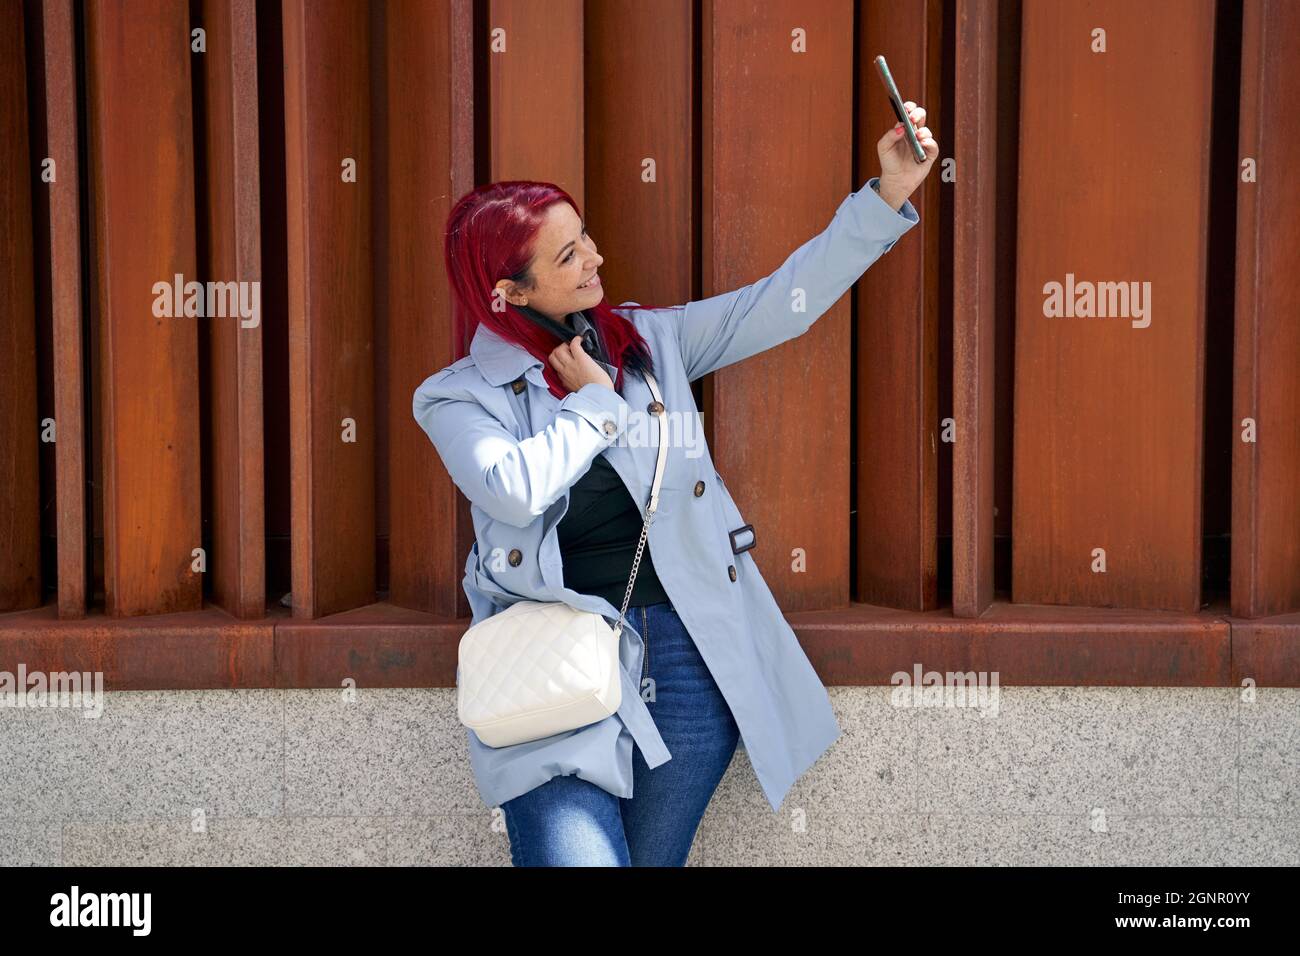 Belle femme à tête rouge prenant un selfie avec son smartphone dans une rue de la ville. Photo de haute qualité Banque D'Images